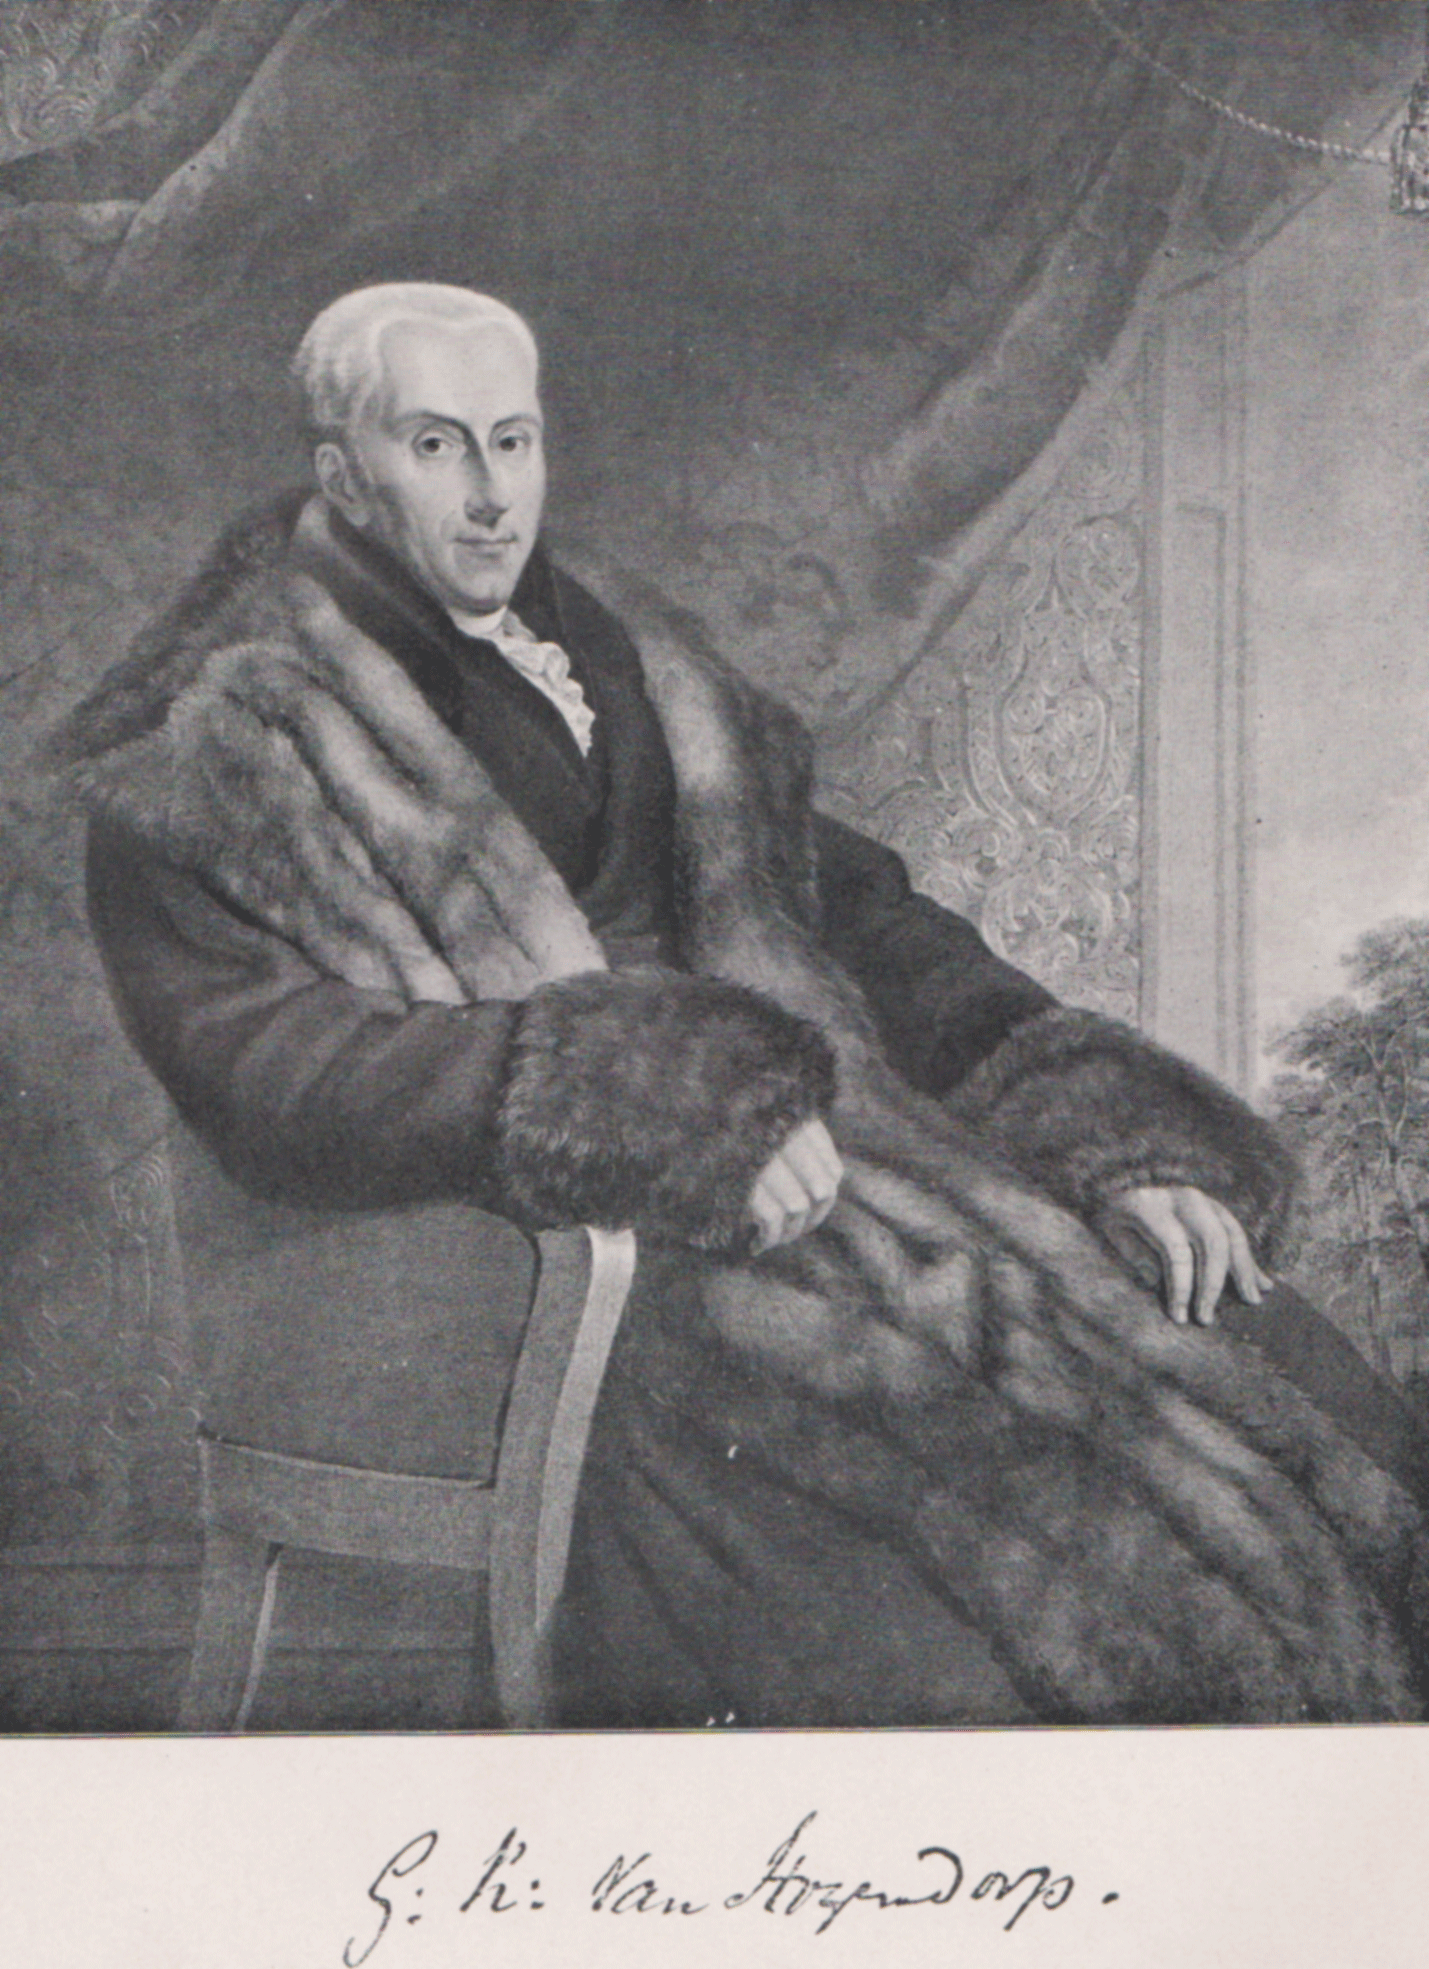 Gijsbert Karel van Hogendorop, de leider van de omwenteling van november 1813